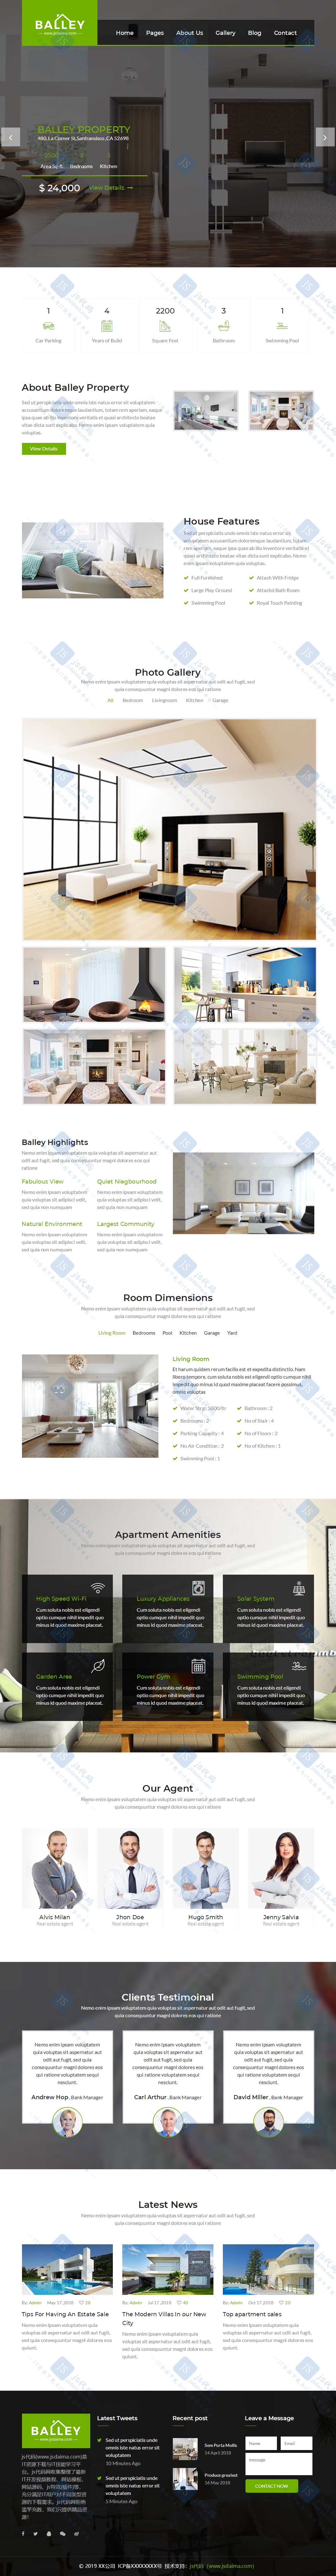 绿色高端大气房屋租赁出租中介公司企业HTML5响应式网站模板